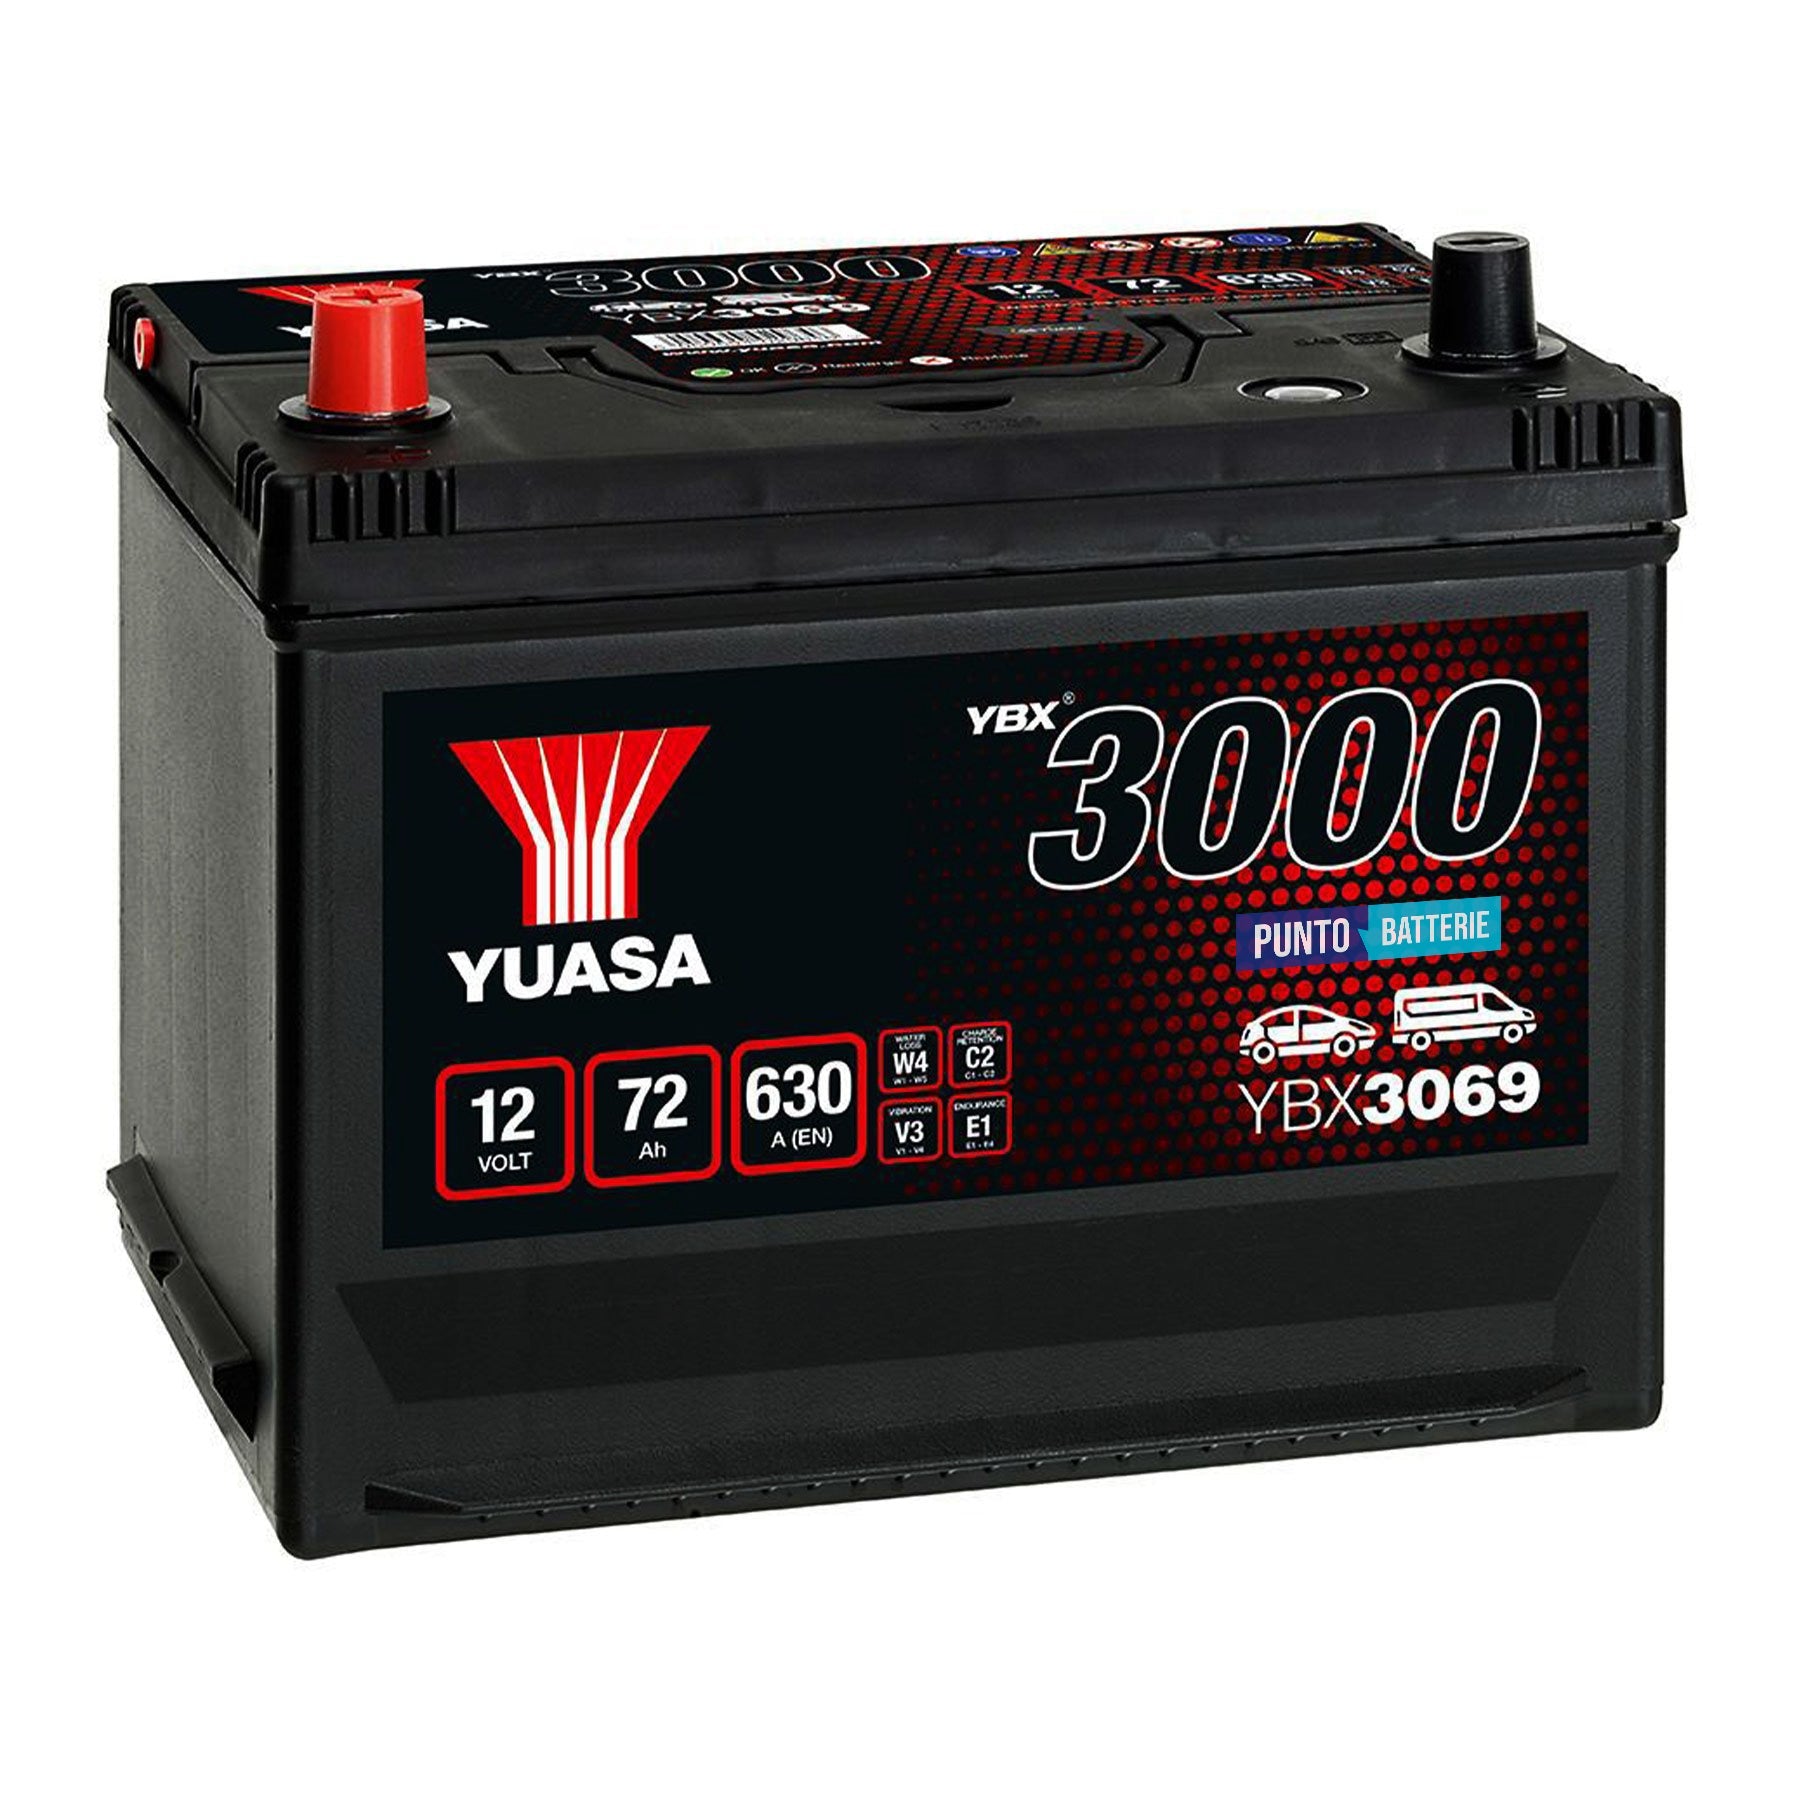 Batteria originale Yuasa YBX3000 YBX3069, dimensioni 269 x 174 x 223, polo positivo a sinistra, 12 volt, 72 amperora, 630 ampere. Batteria per auto e veicoli leggeri.